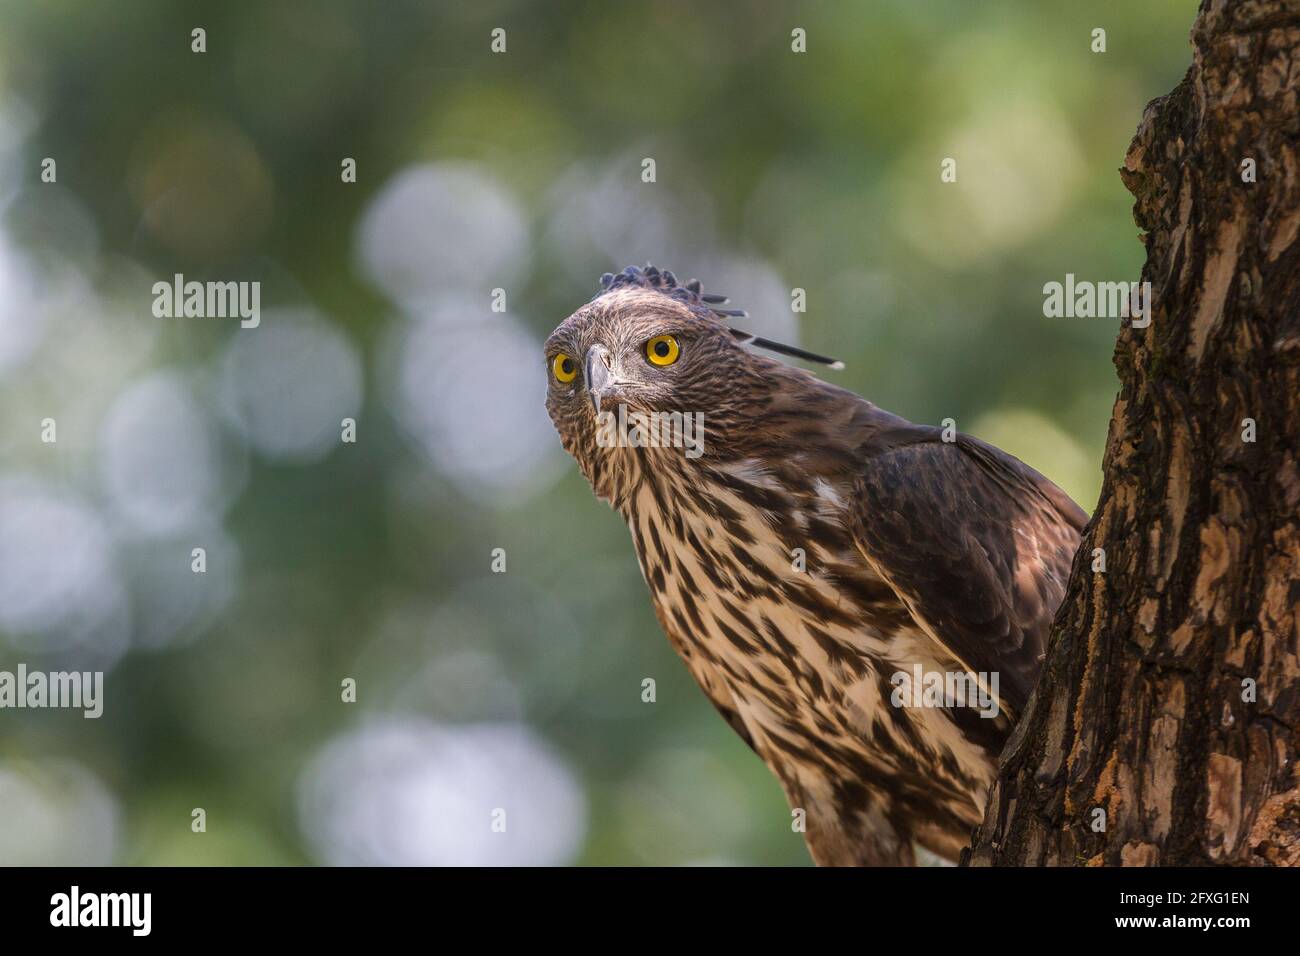 Horizontale Komposition eines wandelbaren Hawk-Adlers, der gerade auf einem Baumstumpf im Bandhavgarh National Park, Madhya Pradesh, Indien, thront Stockfoto